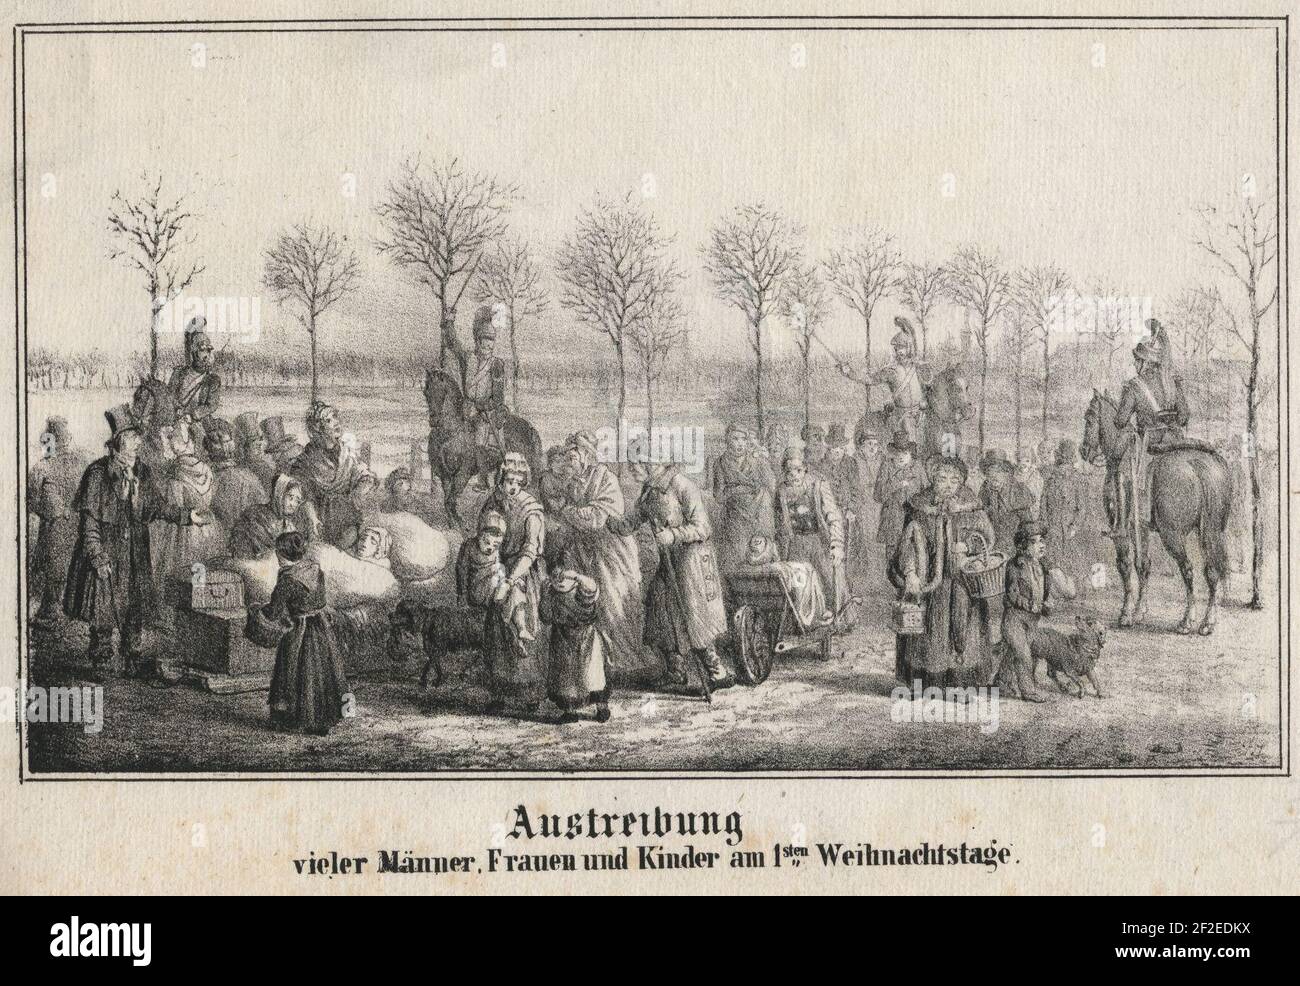 Austreibung vieler Männer, Frauen und Kinder am 1-sten Weihnachtstage (1820). Stock Photo